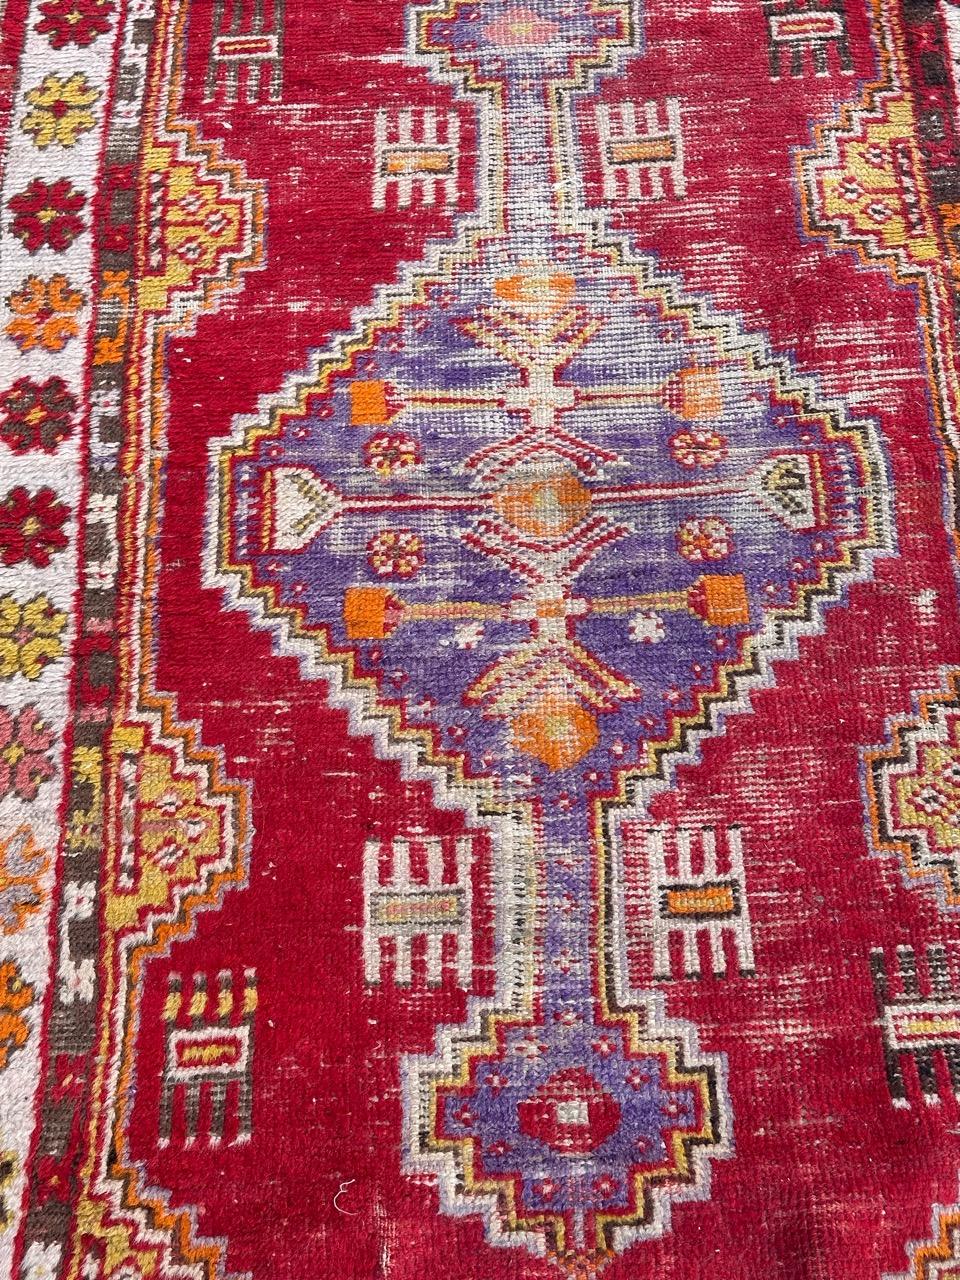 Hübscher türkischer Teppich aus dem frühen 20. Jahrhundert, vollständig handgeknüpft mit Wollsamt auf Baumwollgrund.
Wir stellen Ihnen unseren exquisiten türkischen Teppich aus dem frühen 20. Jahrhundert vor, der von Geschichte und Faszination